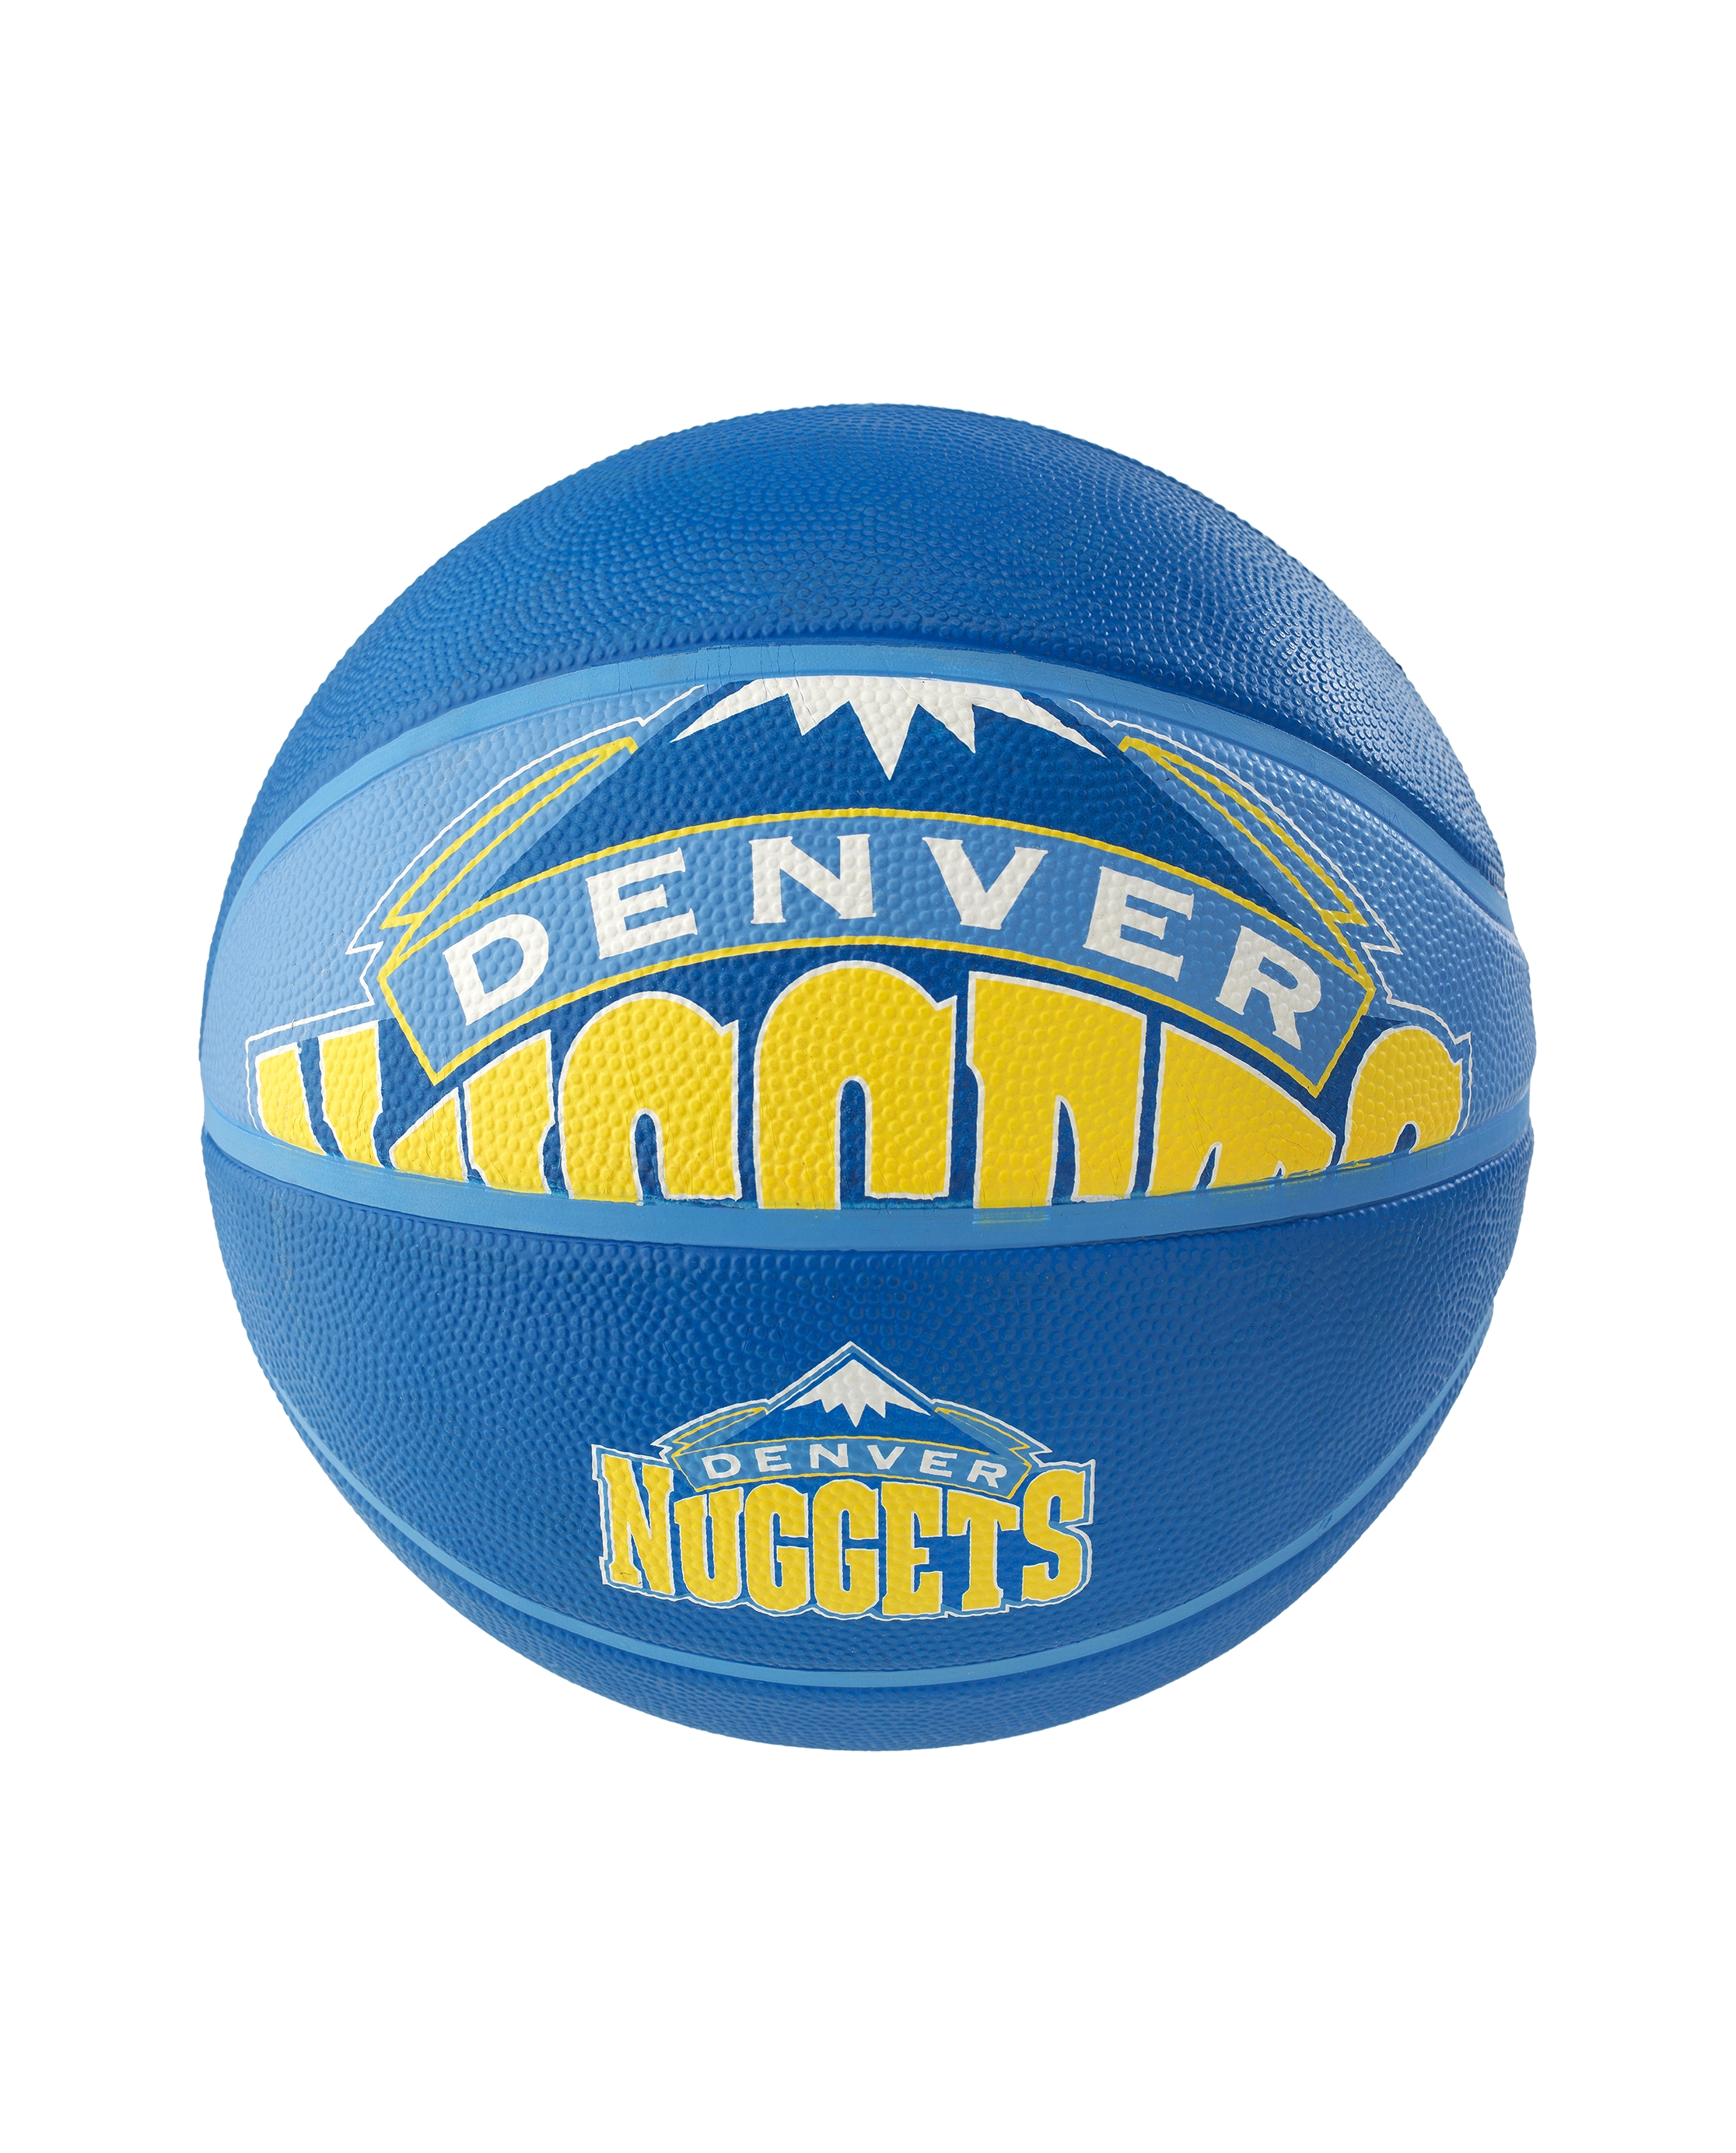 Spalding NBA Denver Nuggets Team Logo - image 1 of 2